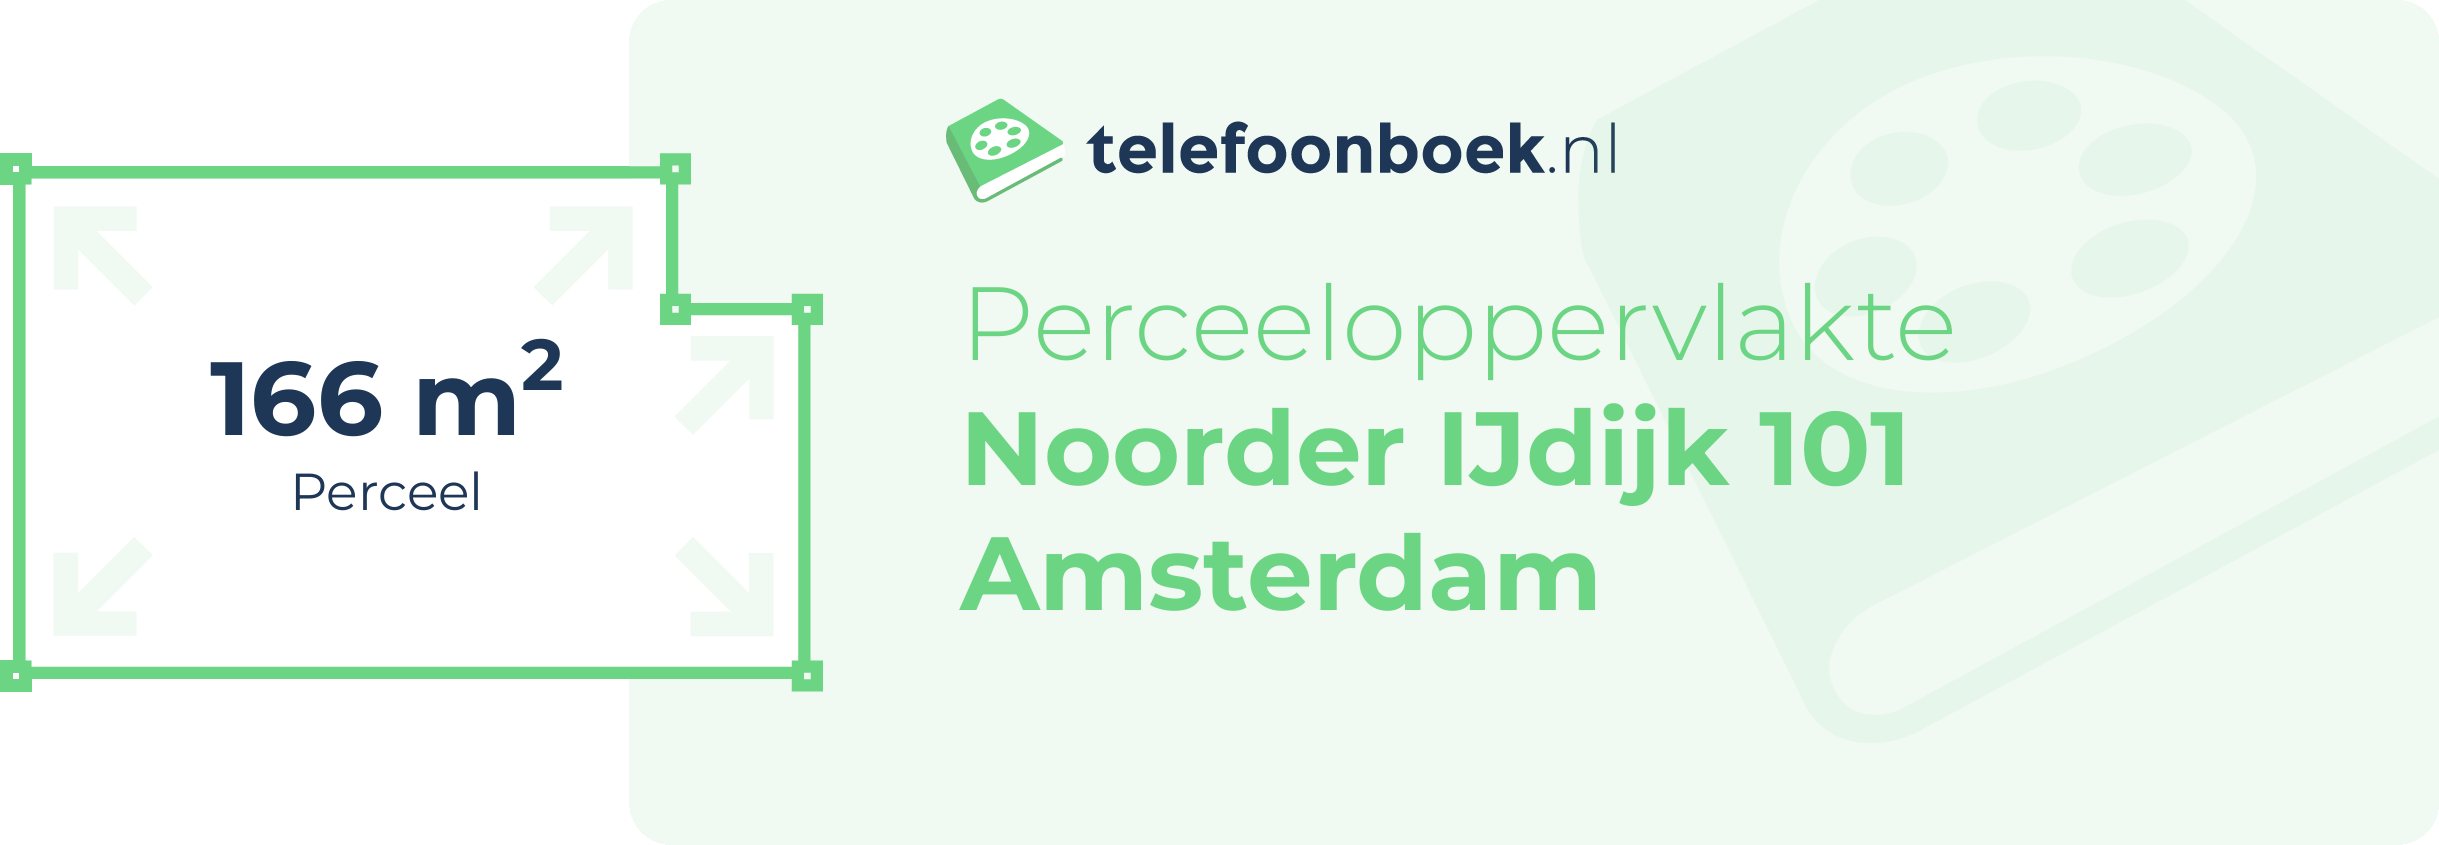 Perceeloppervlakte Noorder IJdijk 101 Amsterdam